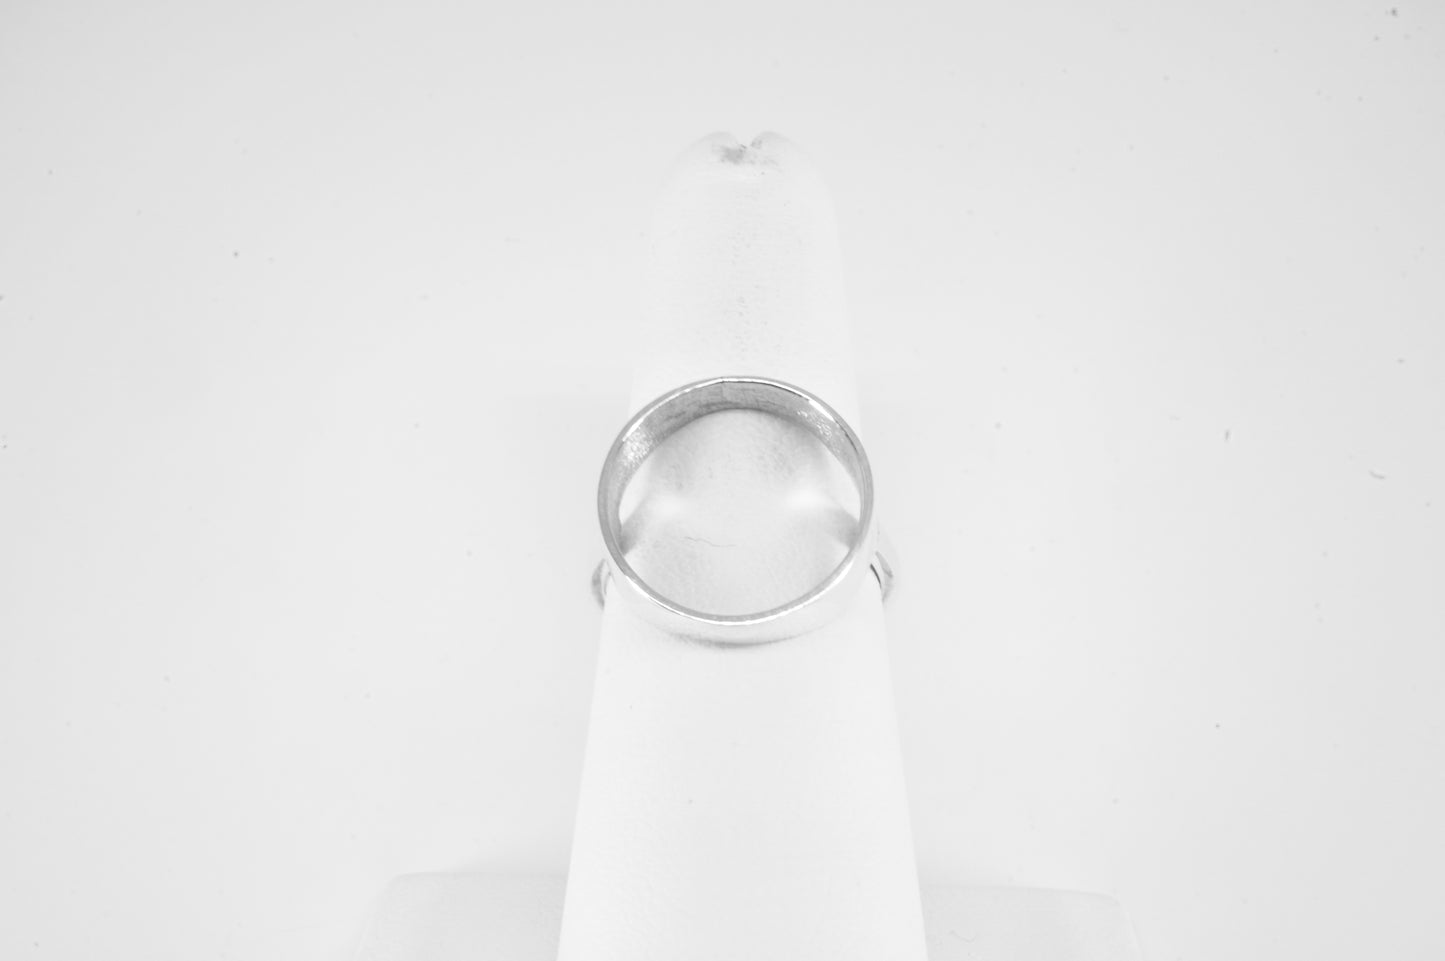 Anillo plata sólita 925, anillo circulo calamar